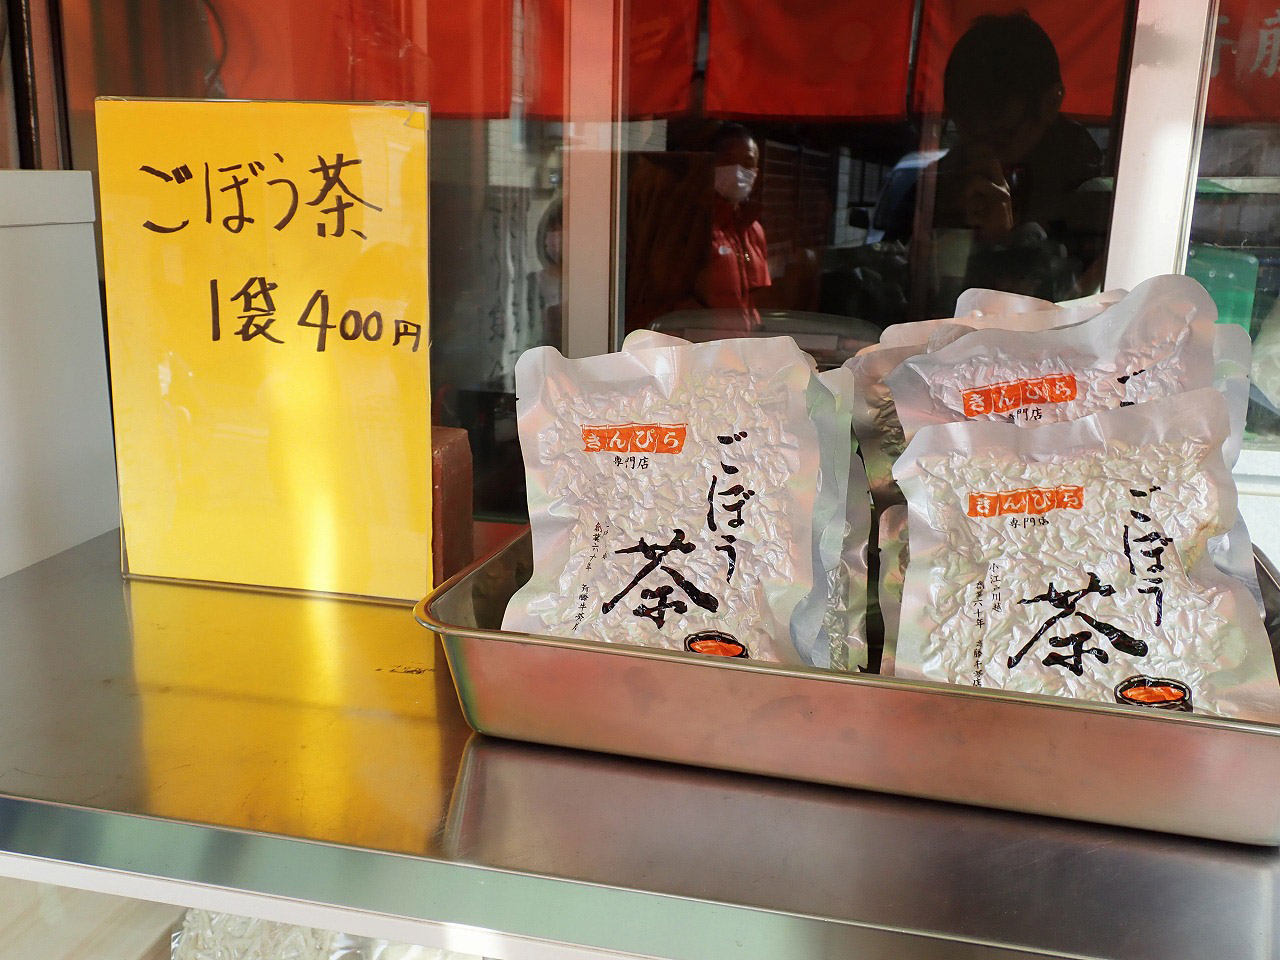 『斉藤牛蒡店』で売られている「ゴボウ茶」